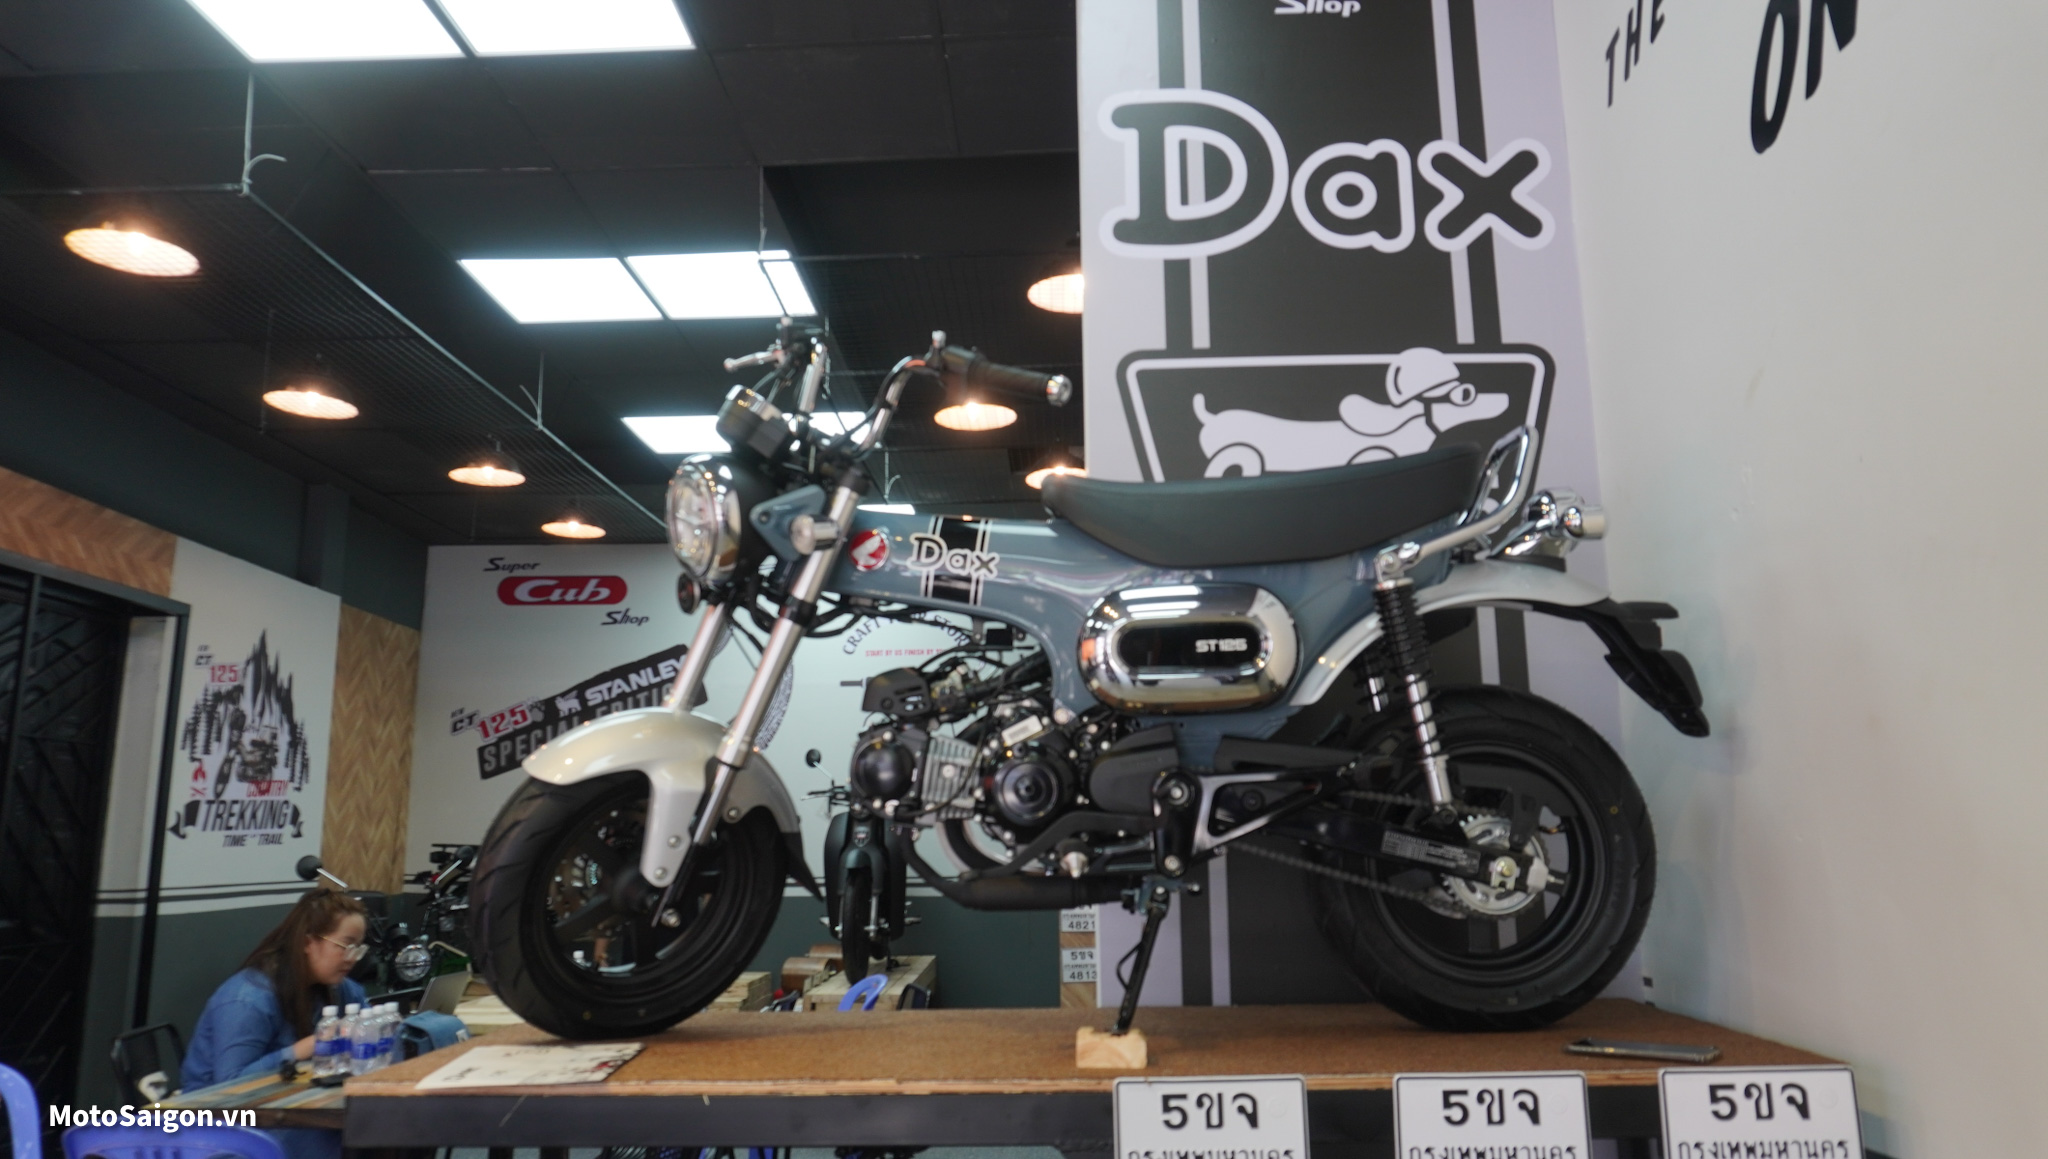 Honda DAX ST125 ABS 2022 đầu tiên Việt Nam đã về showroom Xenon Motor